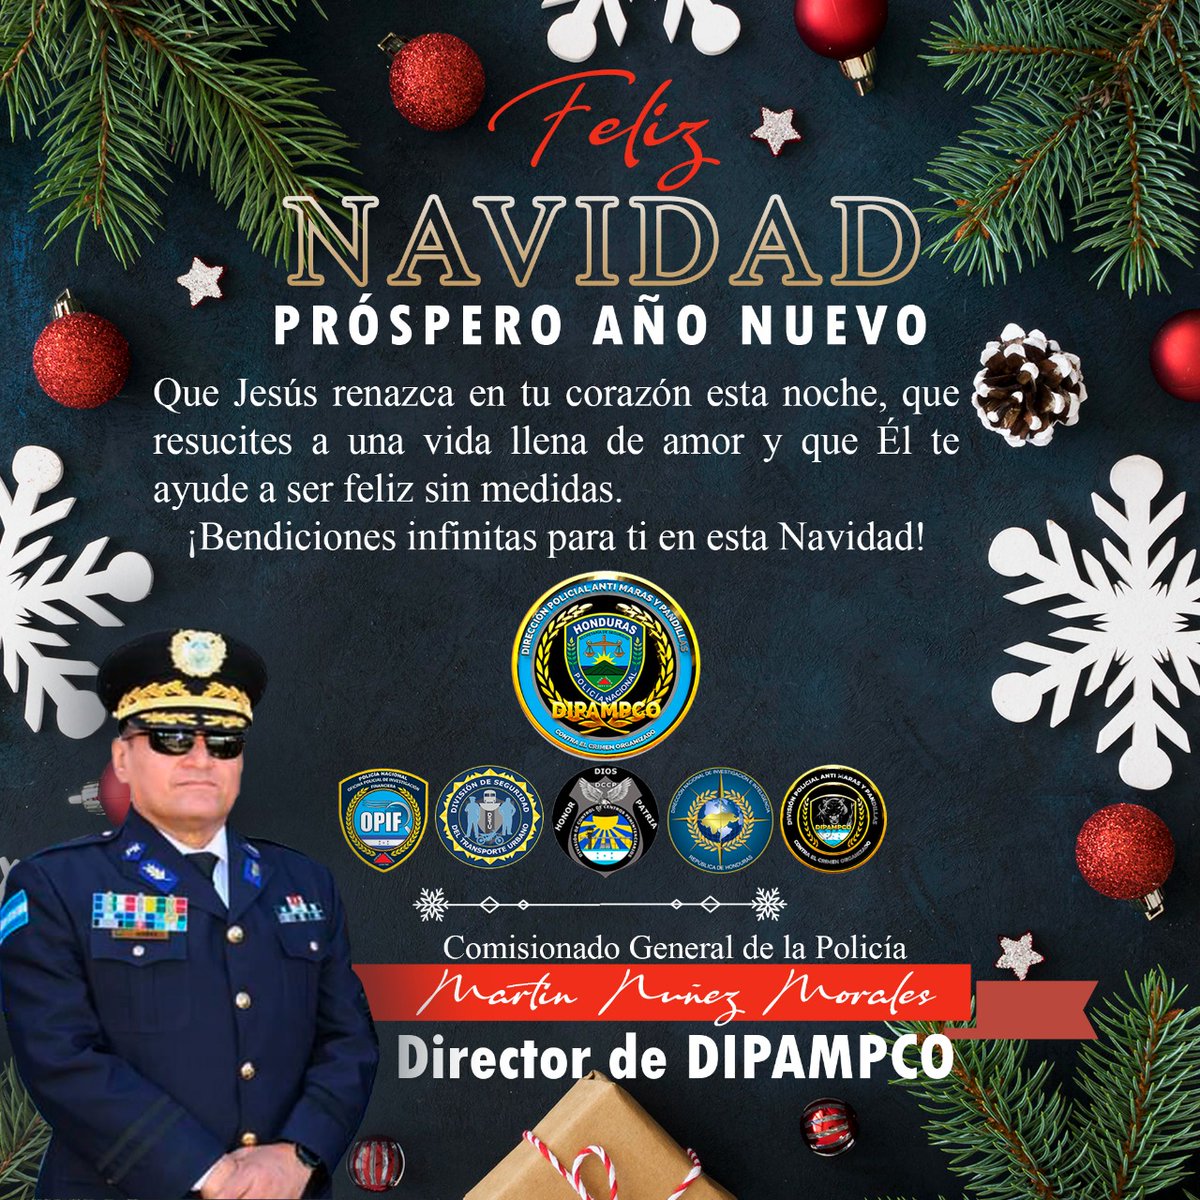 Feliz navidad y felices fiestas.
#DIPAMPCO 
#NavidadPolicial 
#ServiryProteger